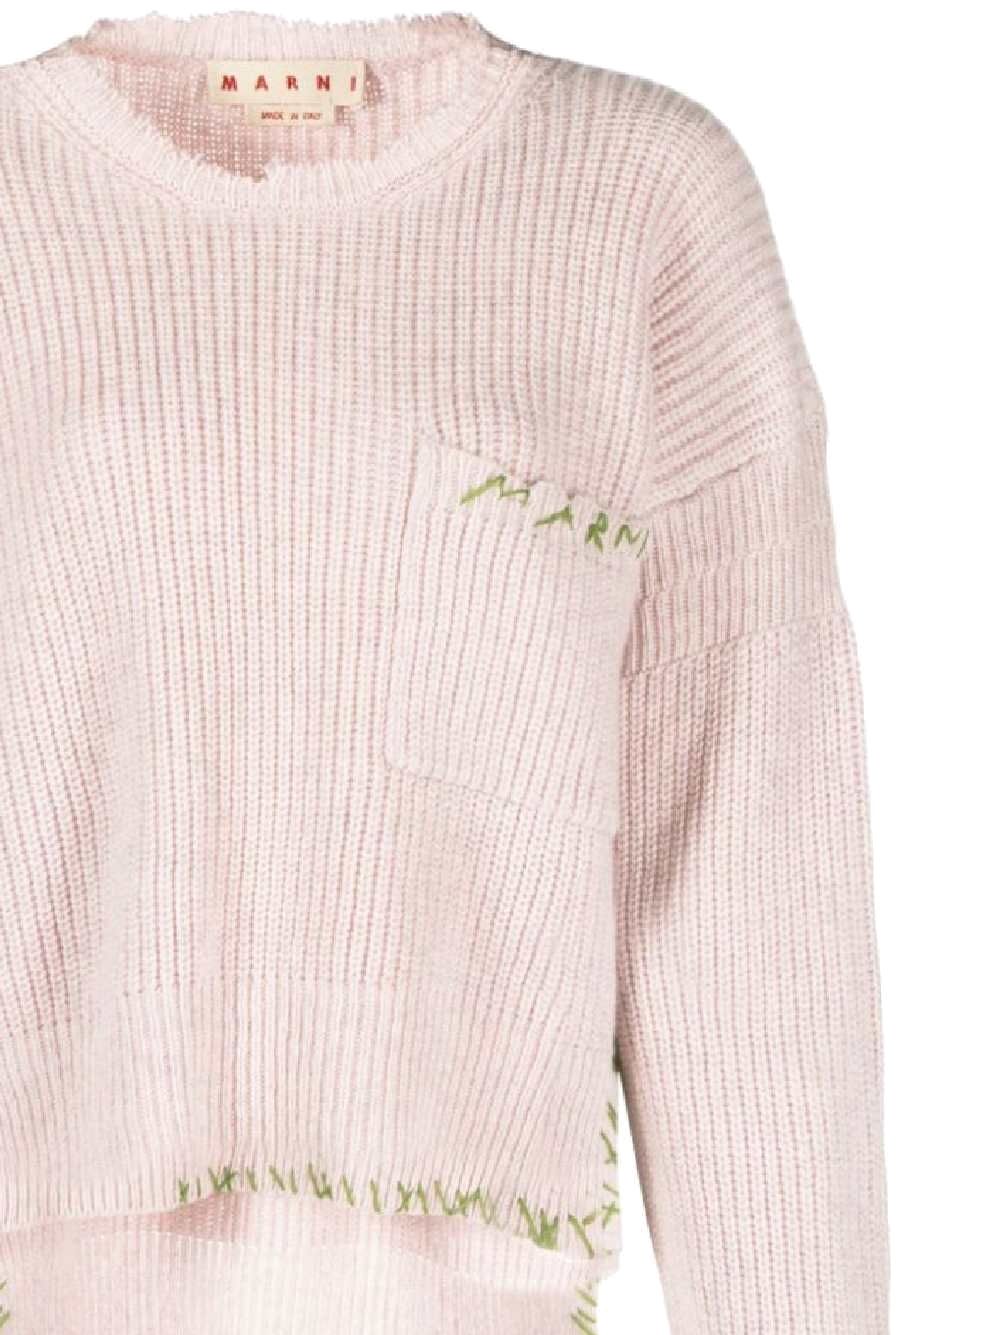 Light pink/green sweater